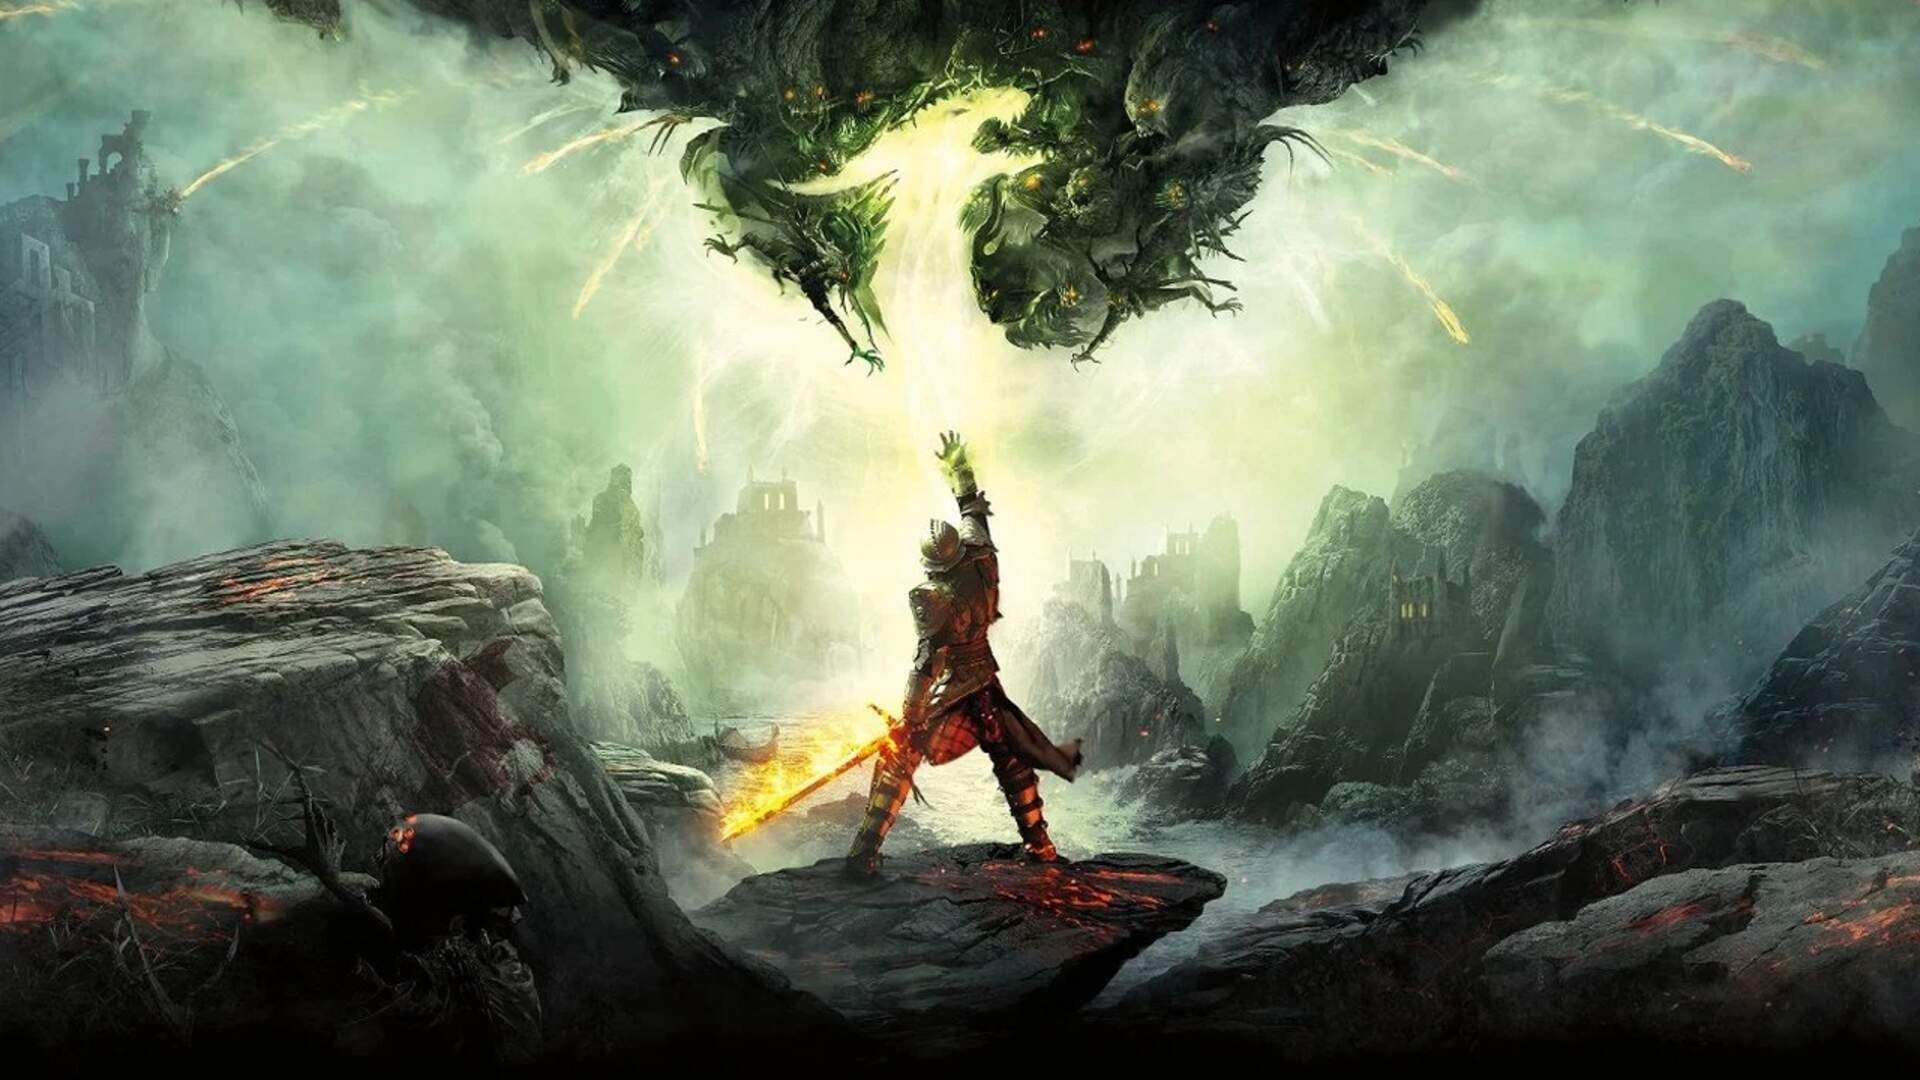 Immagine di 'The Witcher 3 è meglio di Dragon Age Inquisition' per l'ex General Manager di BioWare